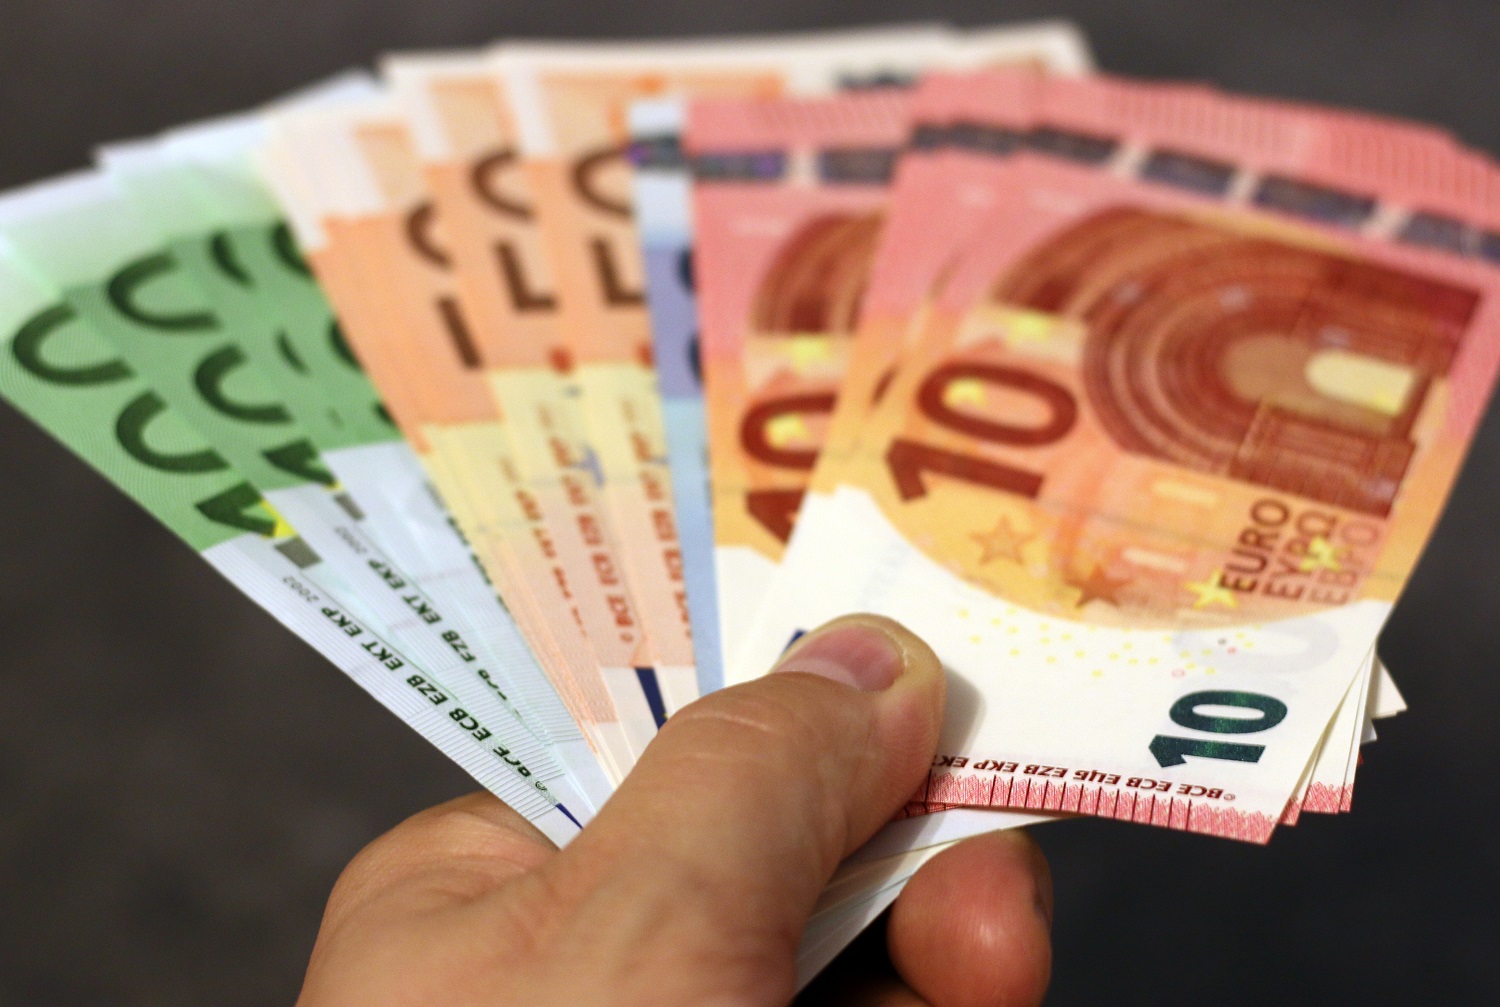 Nuo lapkričio atsiskaitymai grynaisiais pinigais bus ribojami iki 5 tūkst. eurų